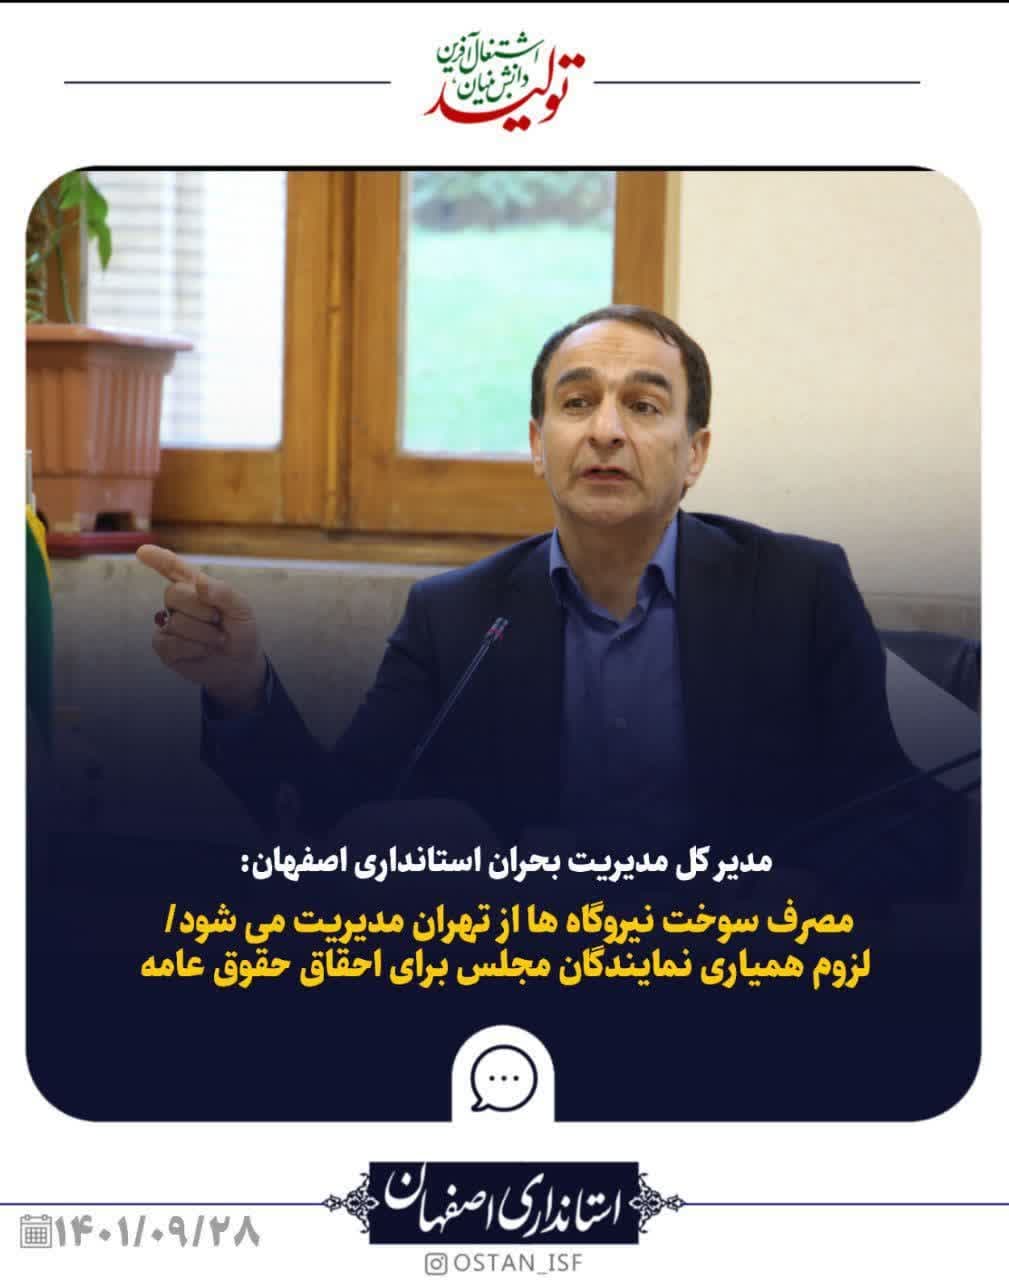 مصرف سوخت نیروگاه ها از تهران مدیریت می شود/ لزوم همیاری نمایندگان مجلس برای احقاق حقوق عامه